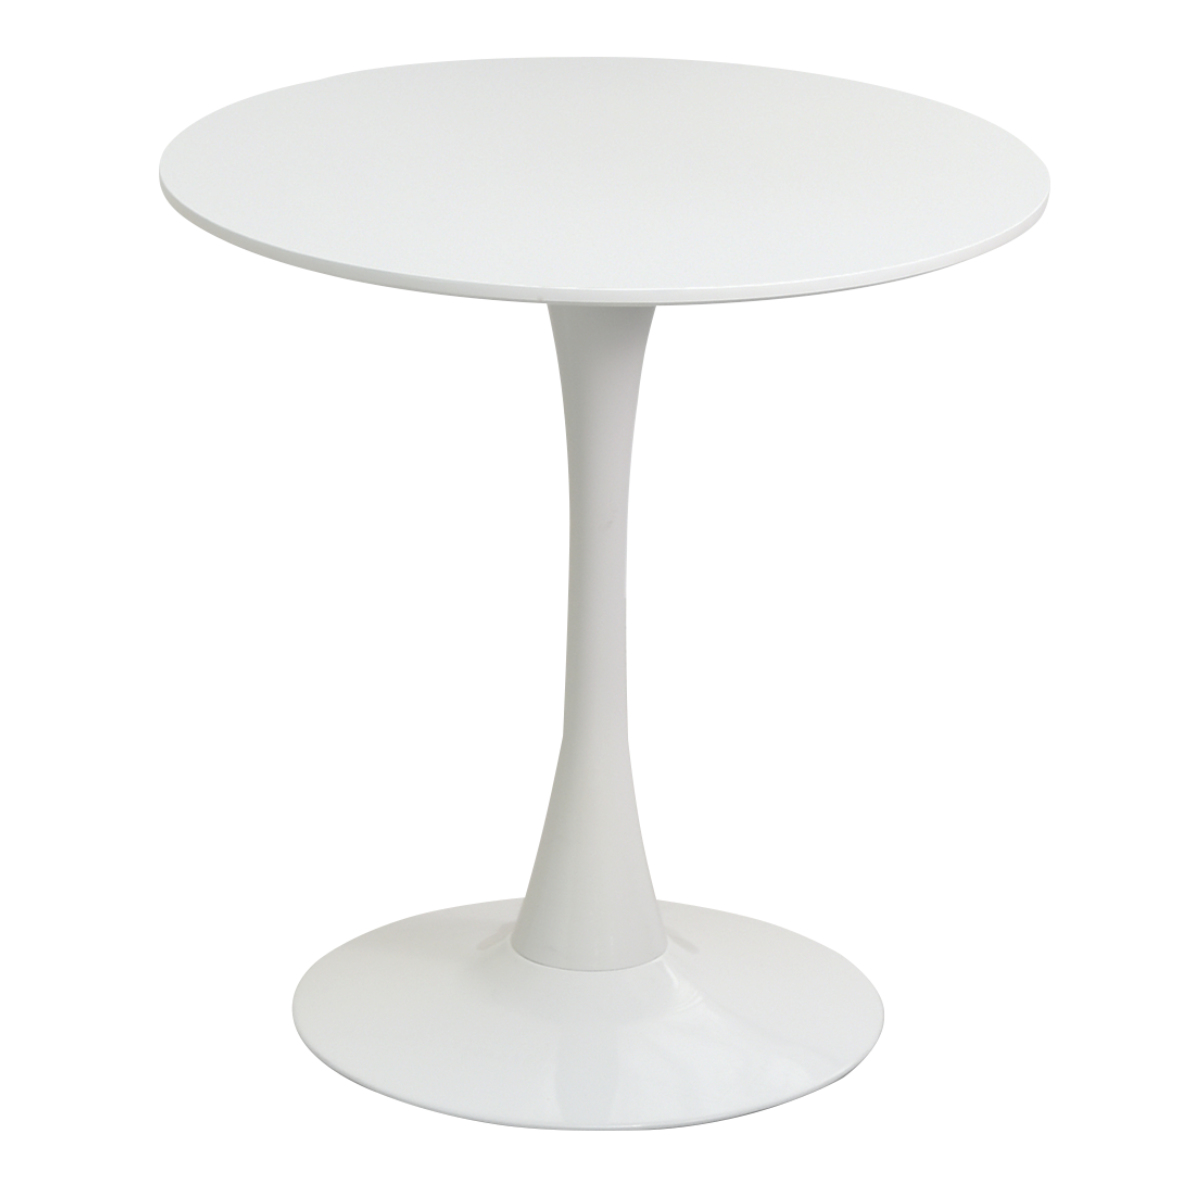 丸テーブル サイドテーブル 丸 ダイニングテーブル ラウンド 幅カフェテーブル